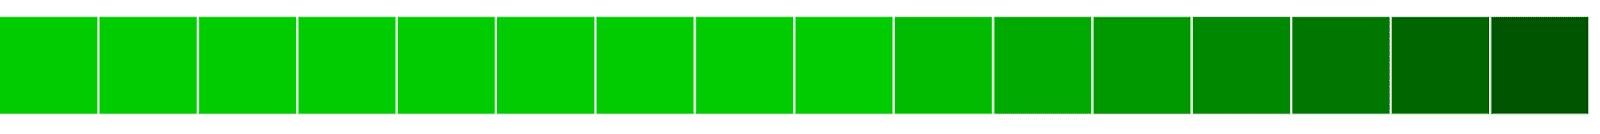 Alignement horizontal de blocs verts du clair au foncé.